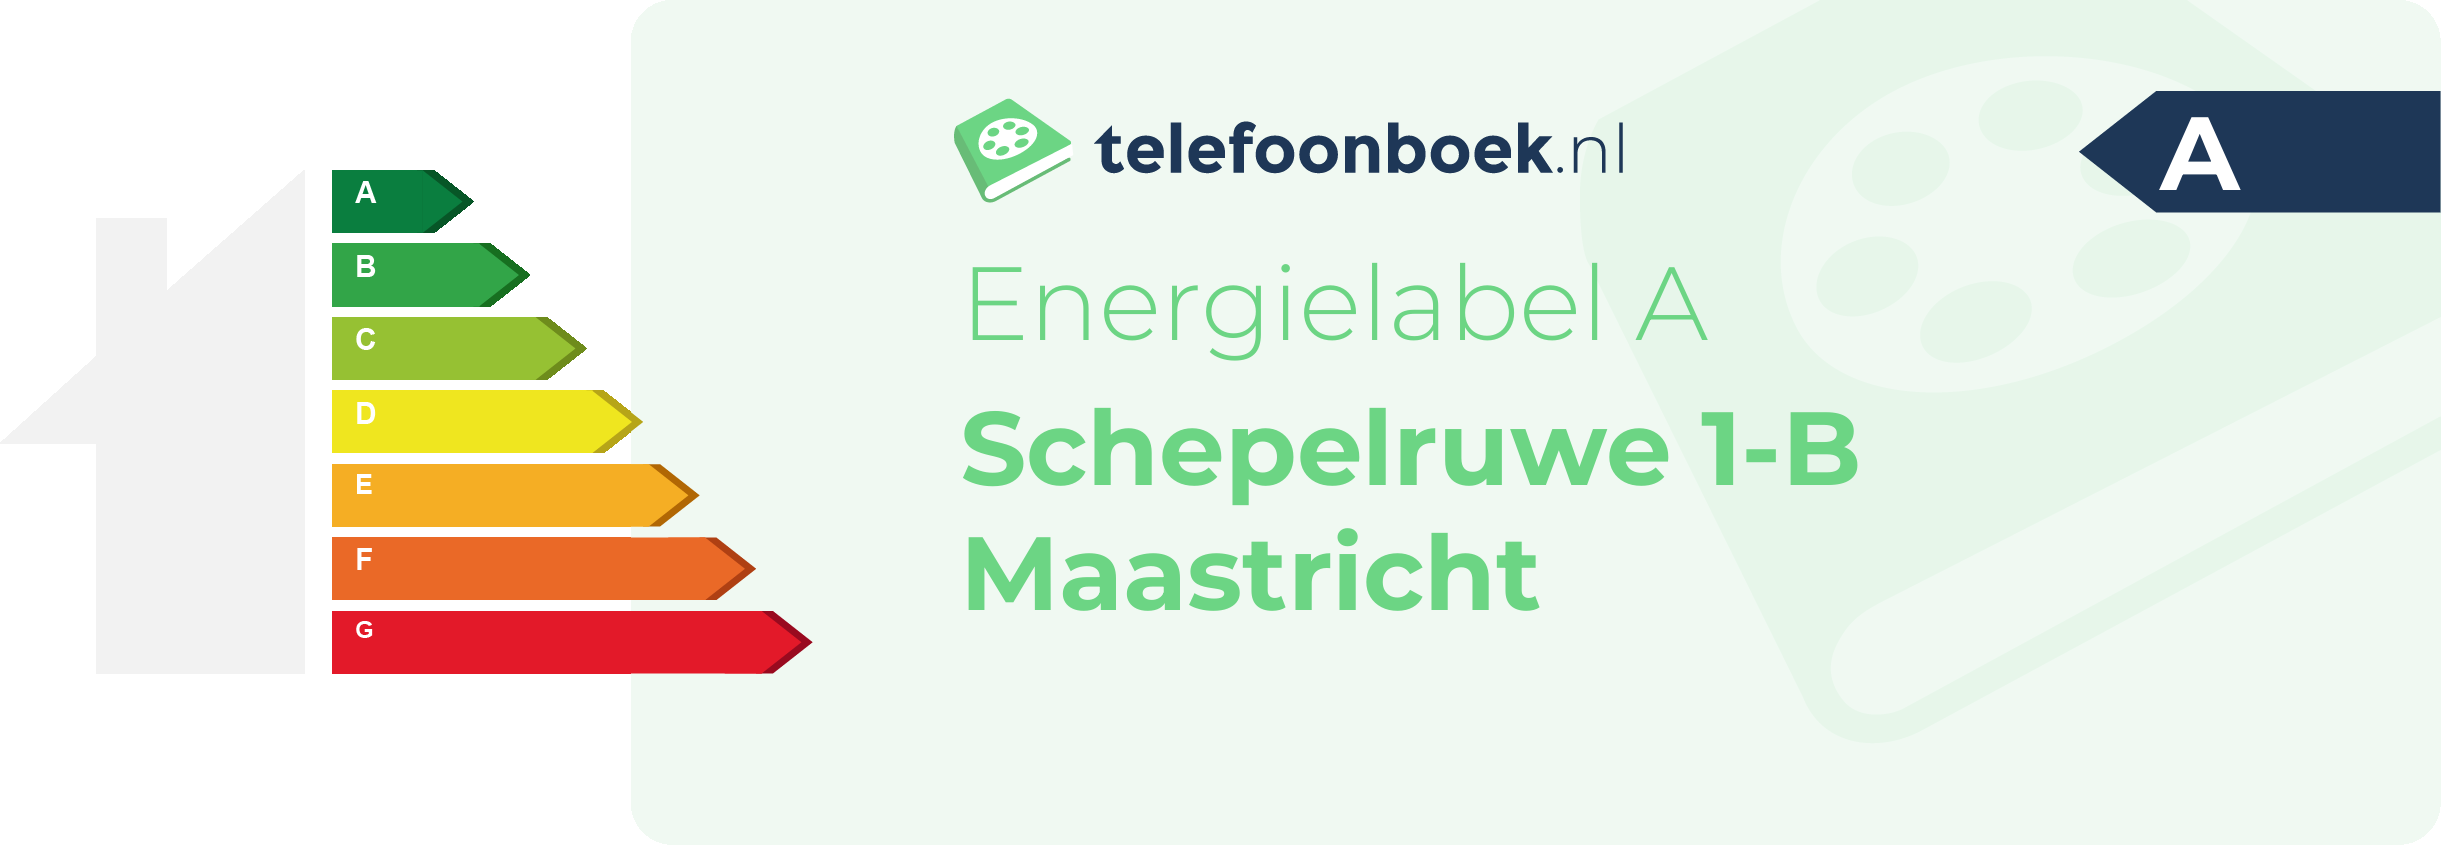 Energielabel Schepelruwe 1-B Maastricht